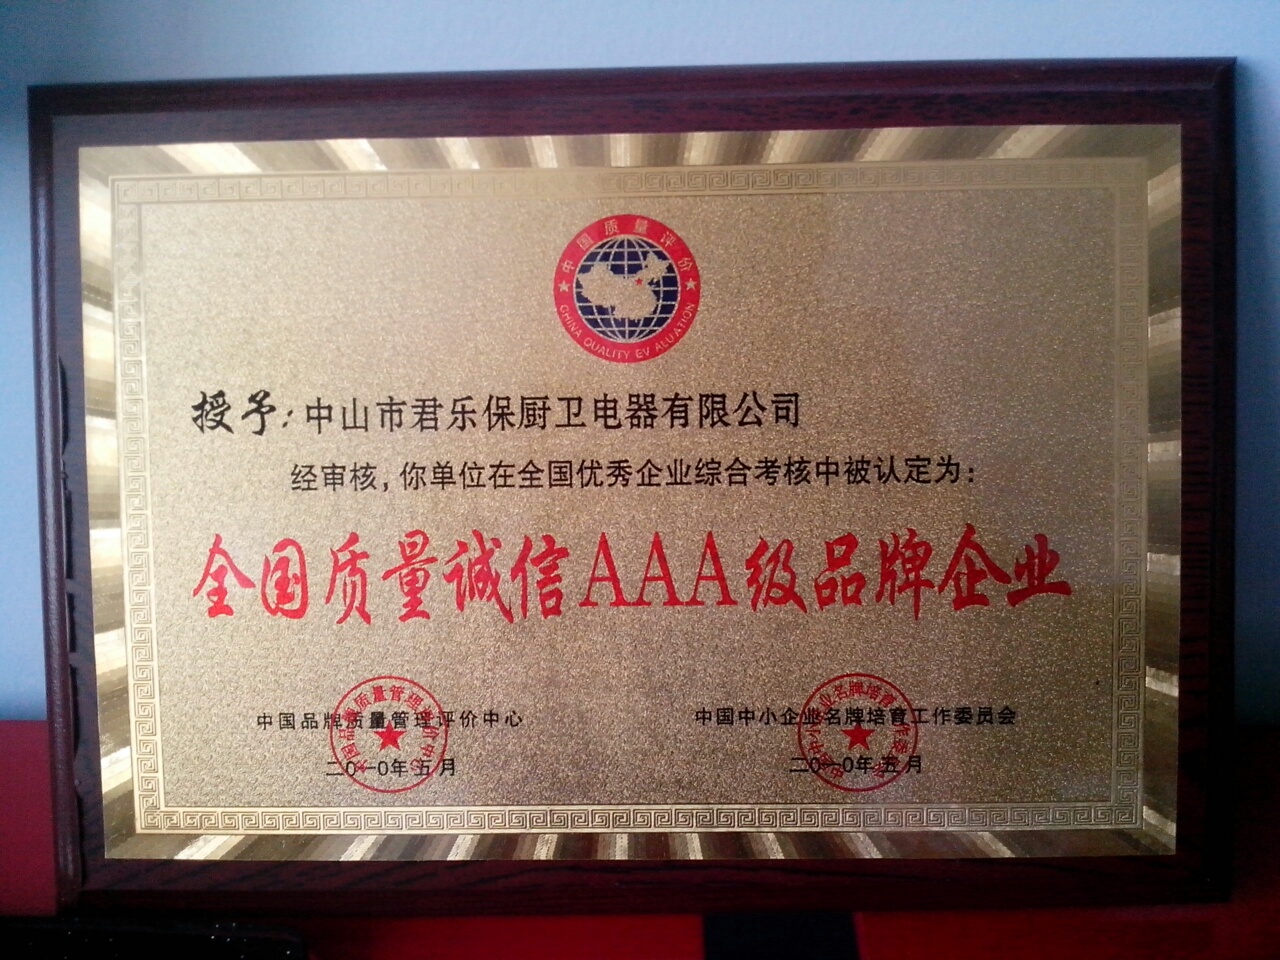 AAA品牌荣誉证书